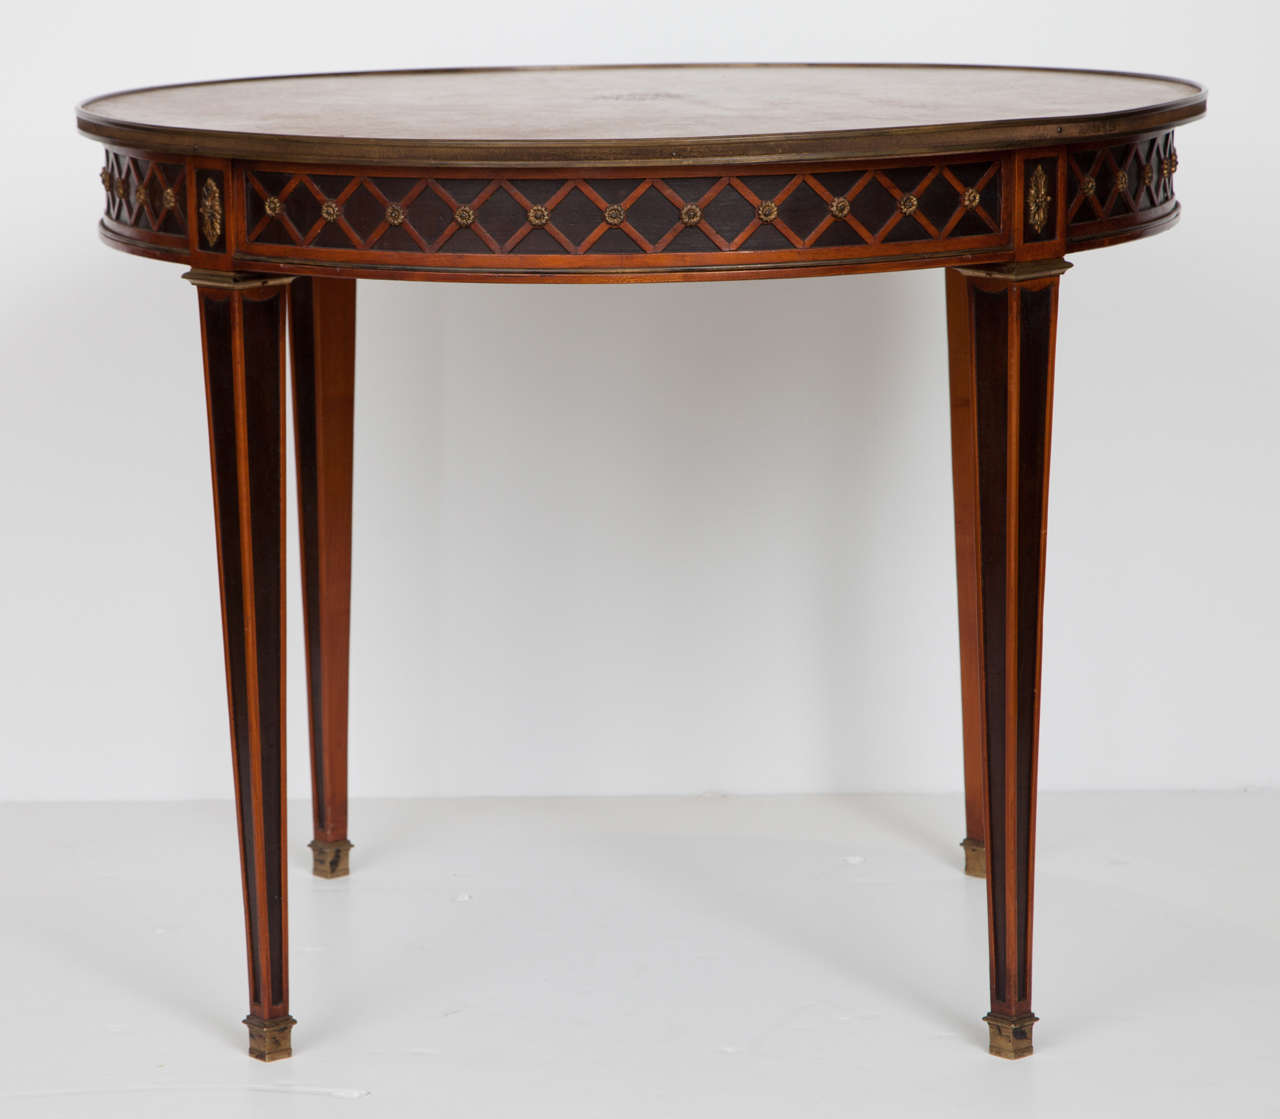 Guéridon de style Louis XVI d'une qualité et d'une exécution exceptionnelles. Attribuée à la Maison Jansen, cette table est dotée de pieds et d'un tablier effilés ébonisés, d'un beau motif en X, d'accents en bronze doré et d'un plateau en cuir.